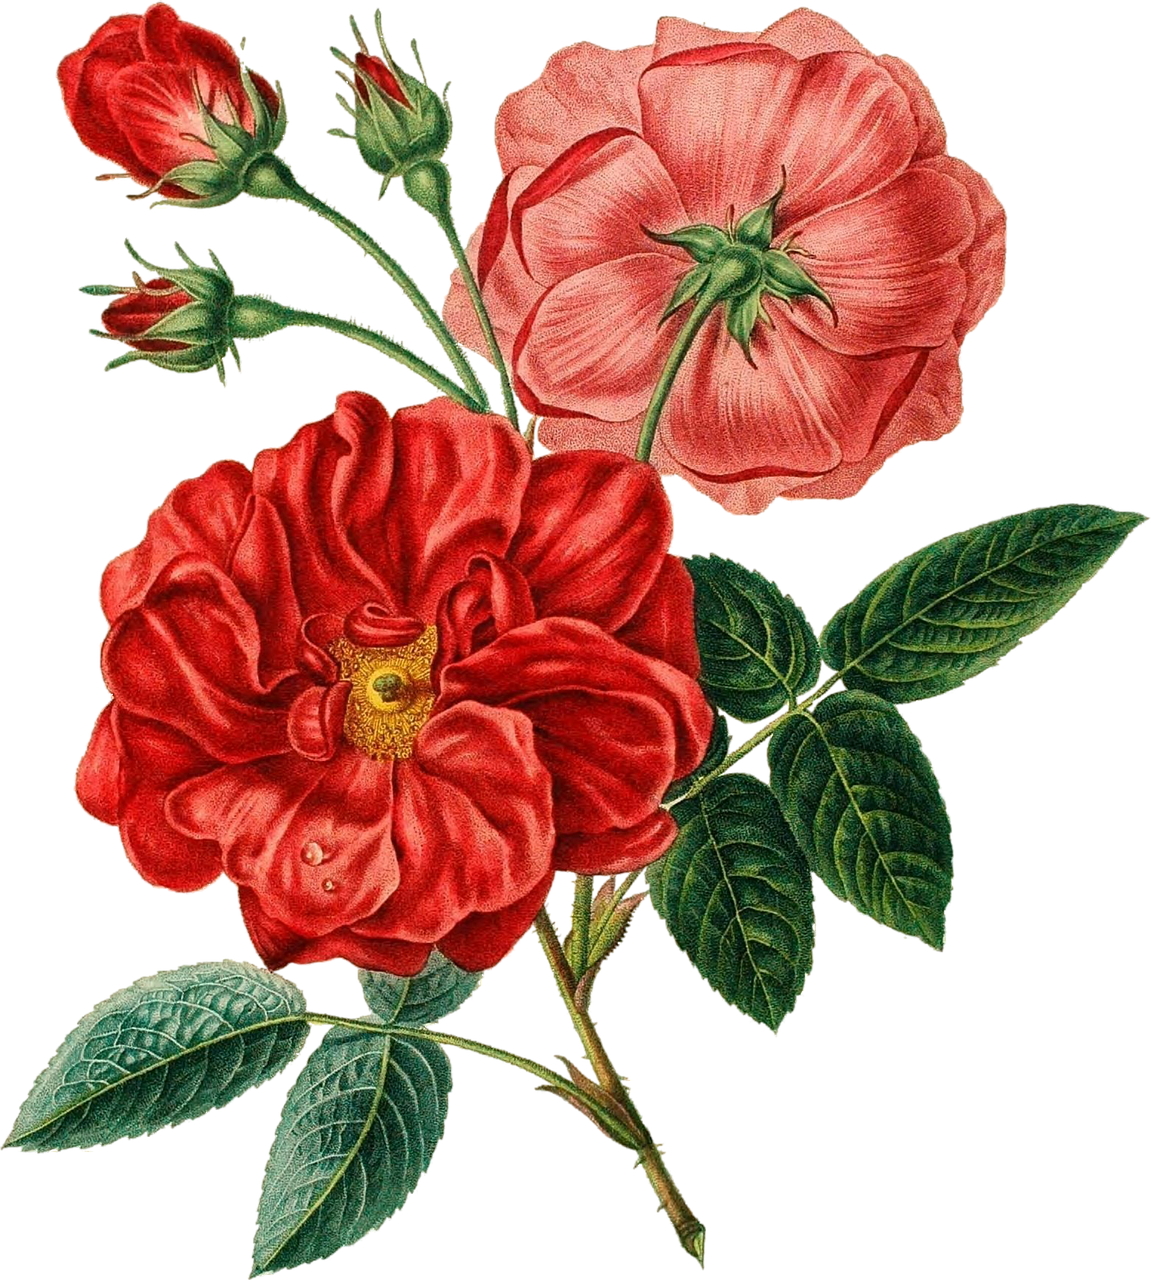 Flower Bouquet Red Poppy - Flower Bouquet Red Poppy (1151x1280)